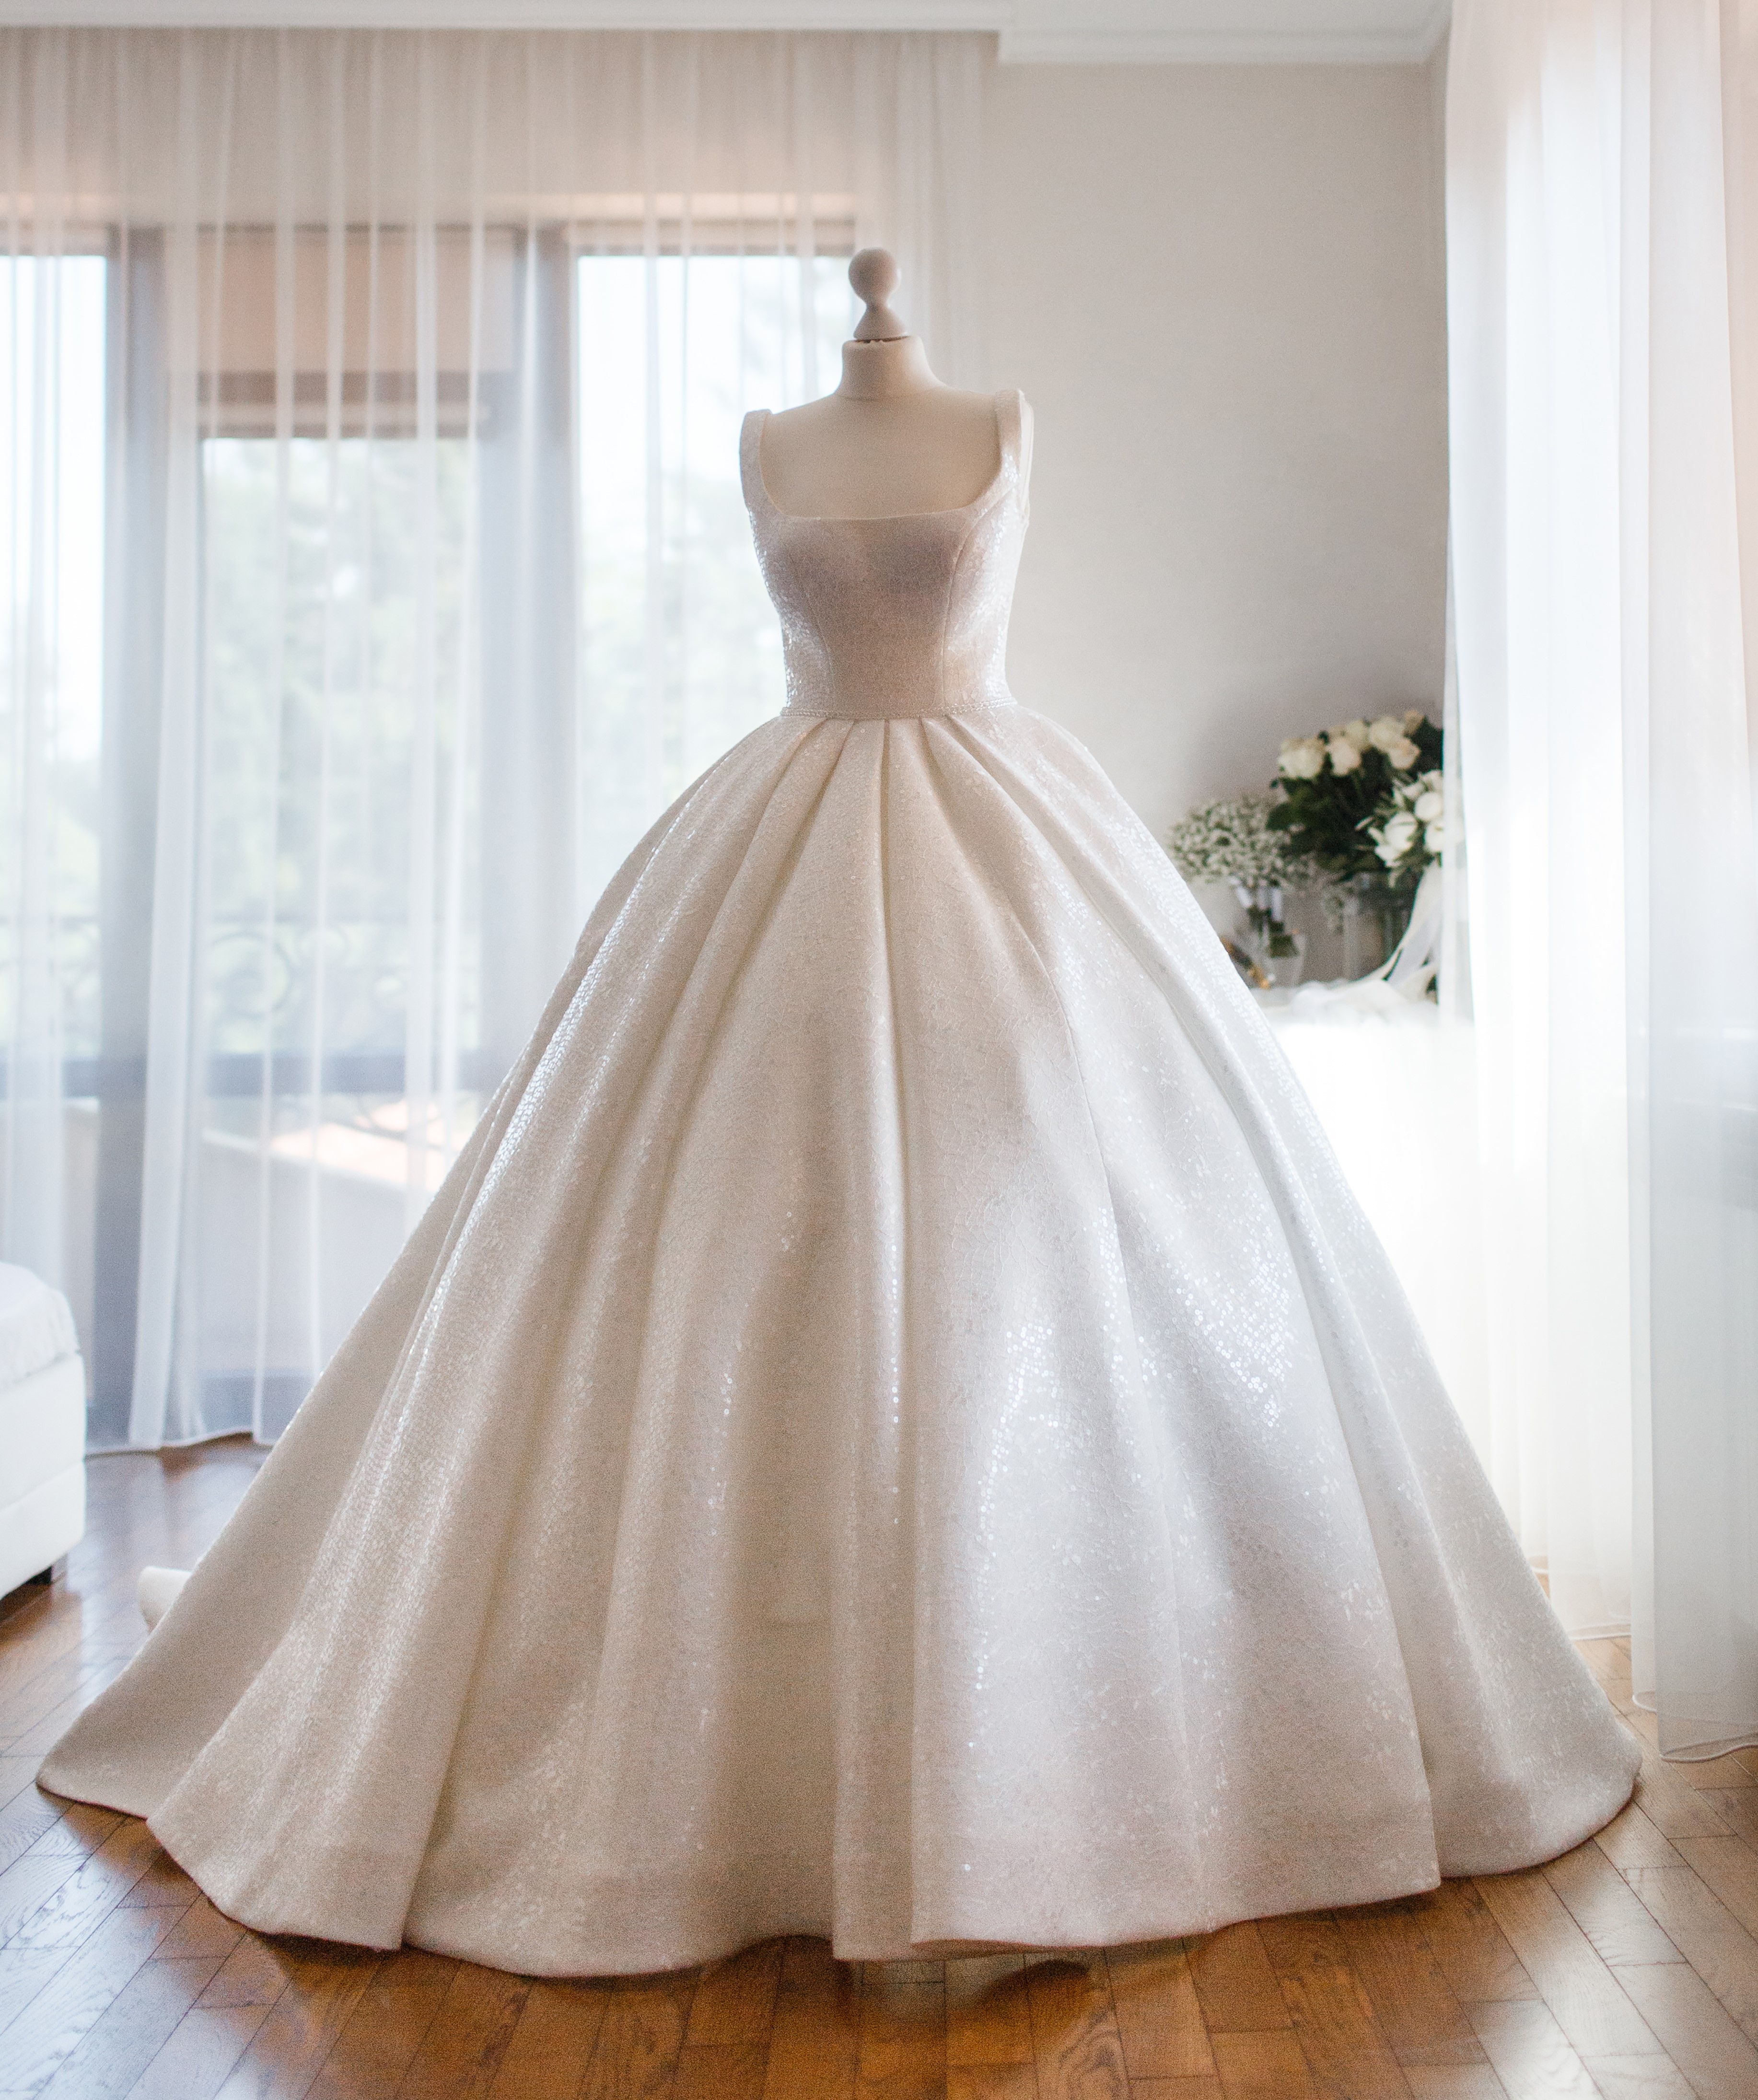 Une robe de mariée exposée | Source : Getty Images